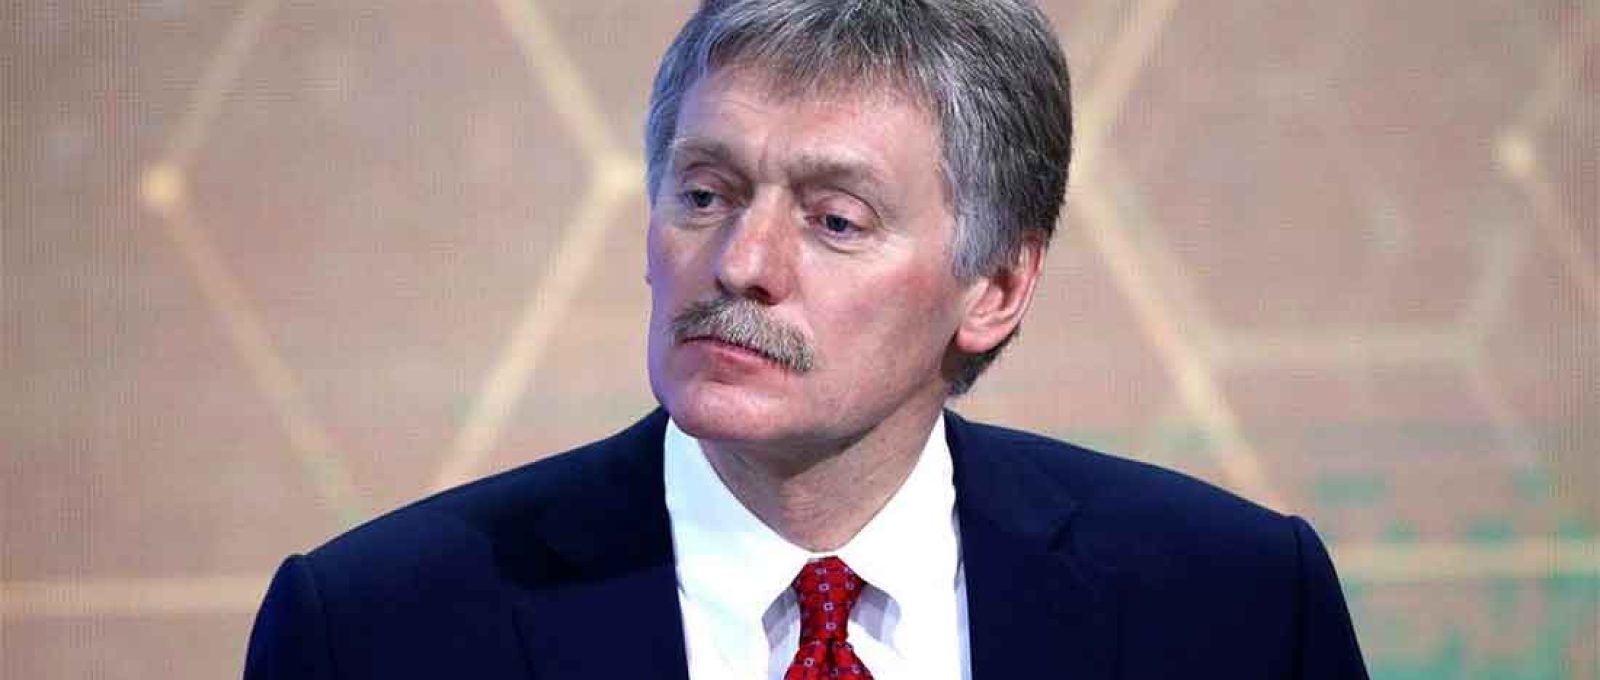 O porta-voz da presidência da Rússia, Dmitry Peskov (Foto: Sergei Bobylev/Tass).